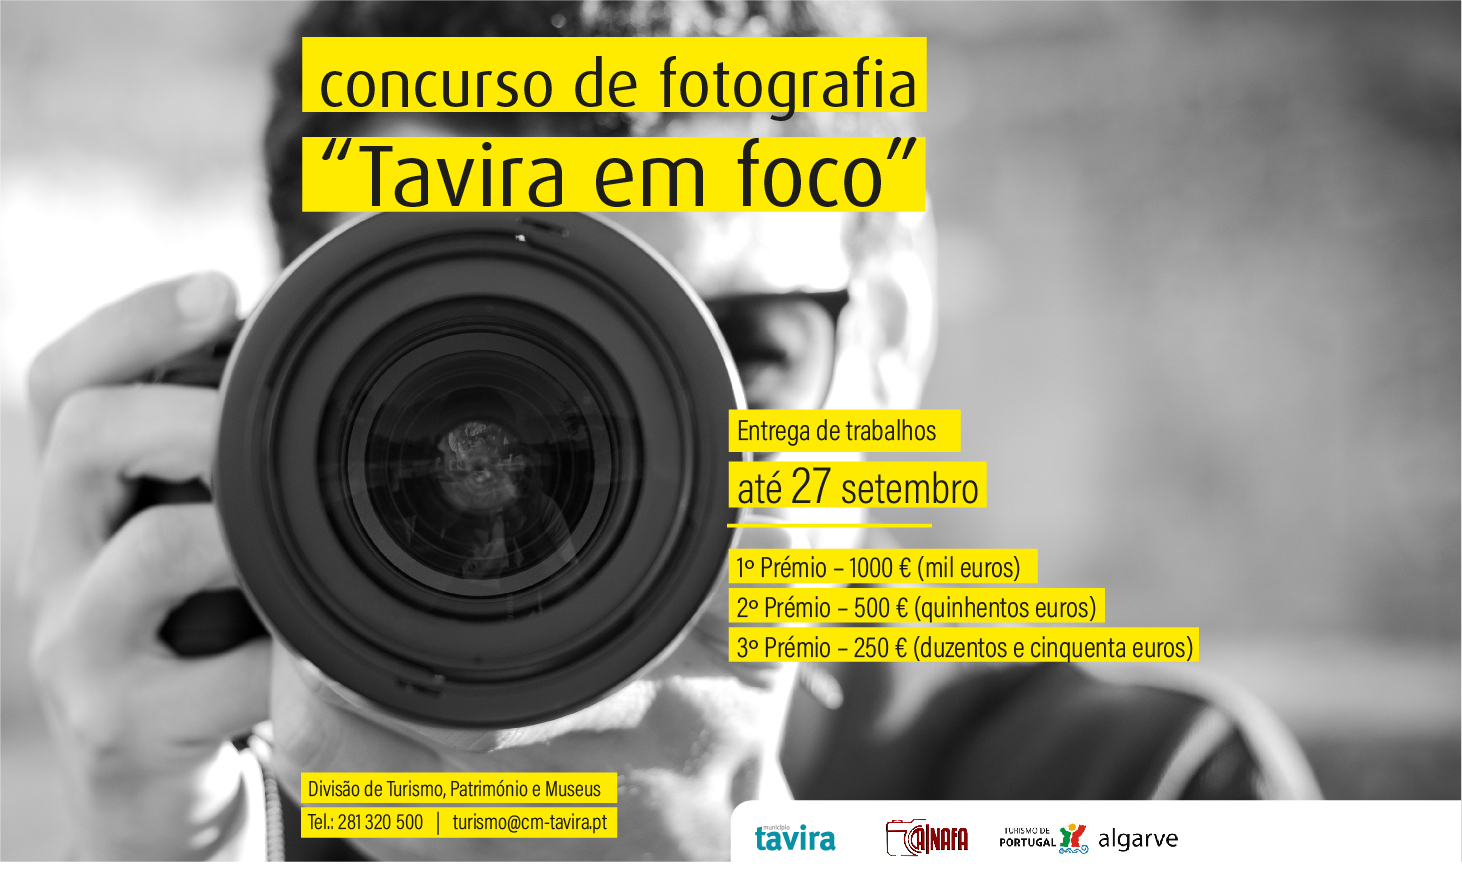 Concurso de fotografia “Tavira Em Foco”